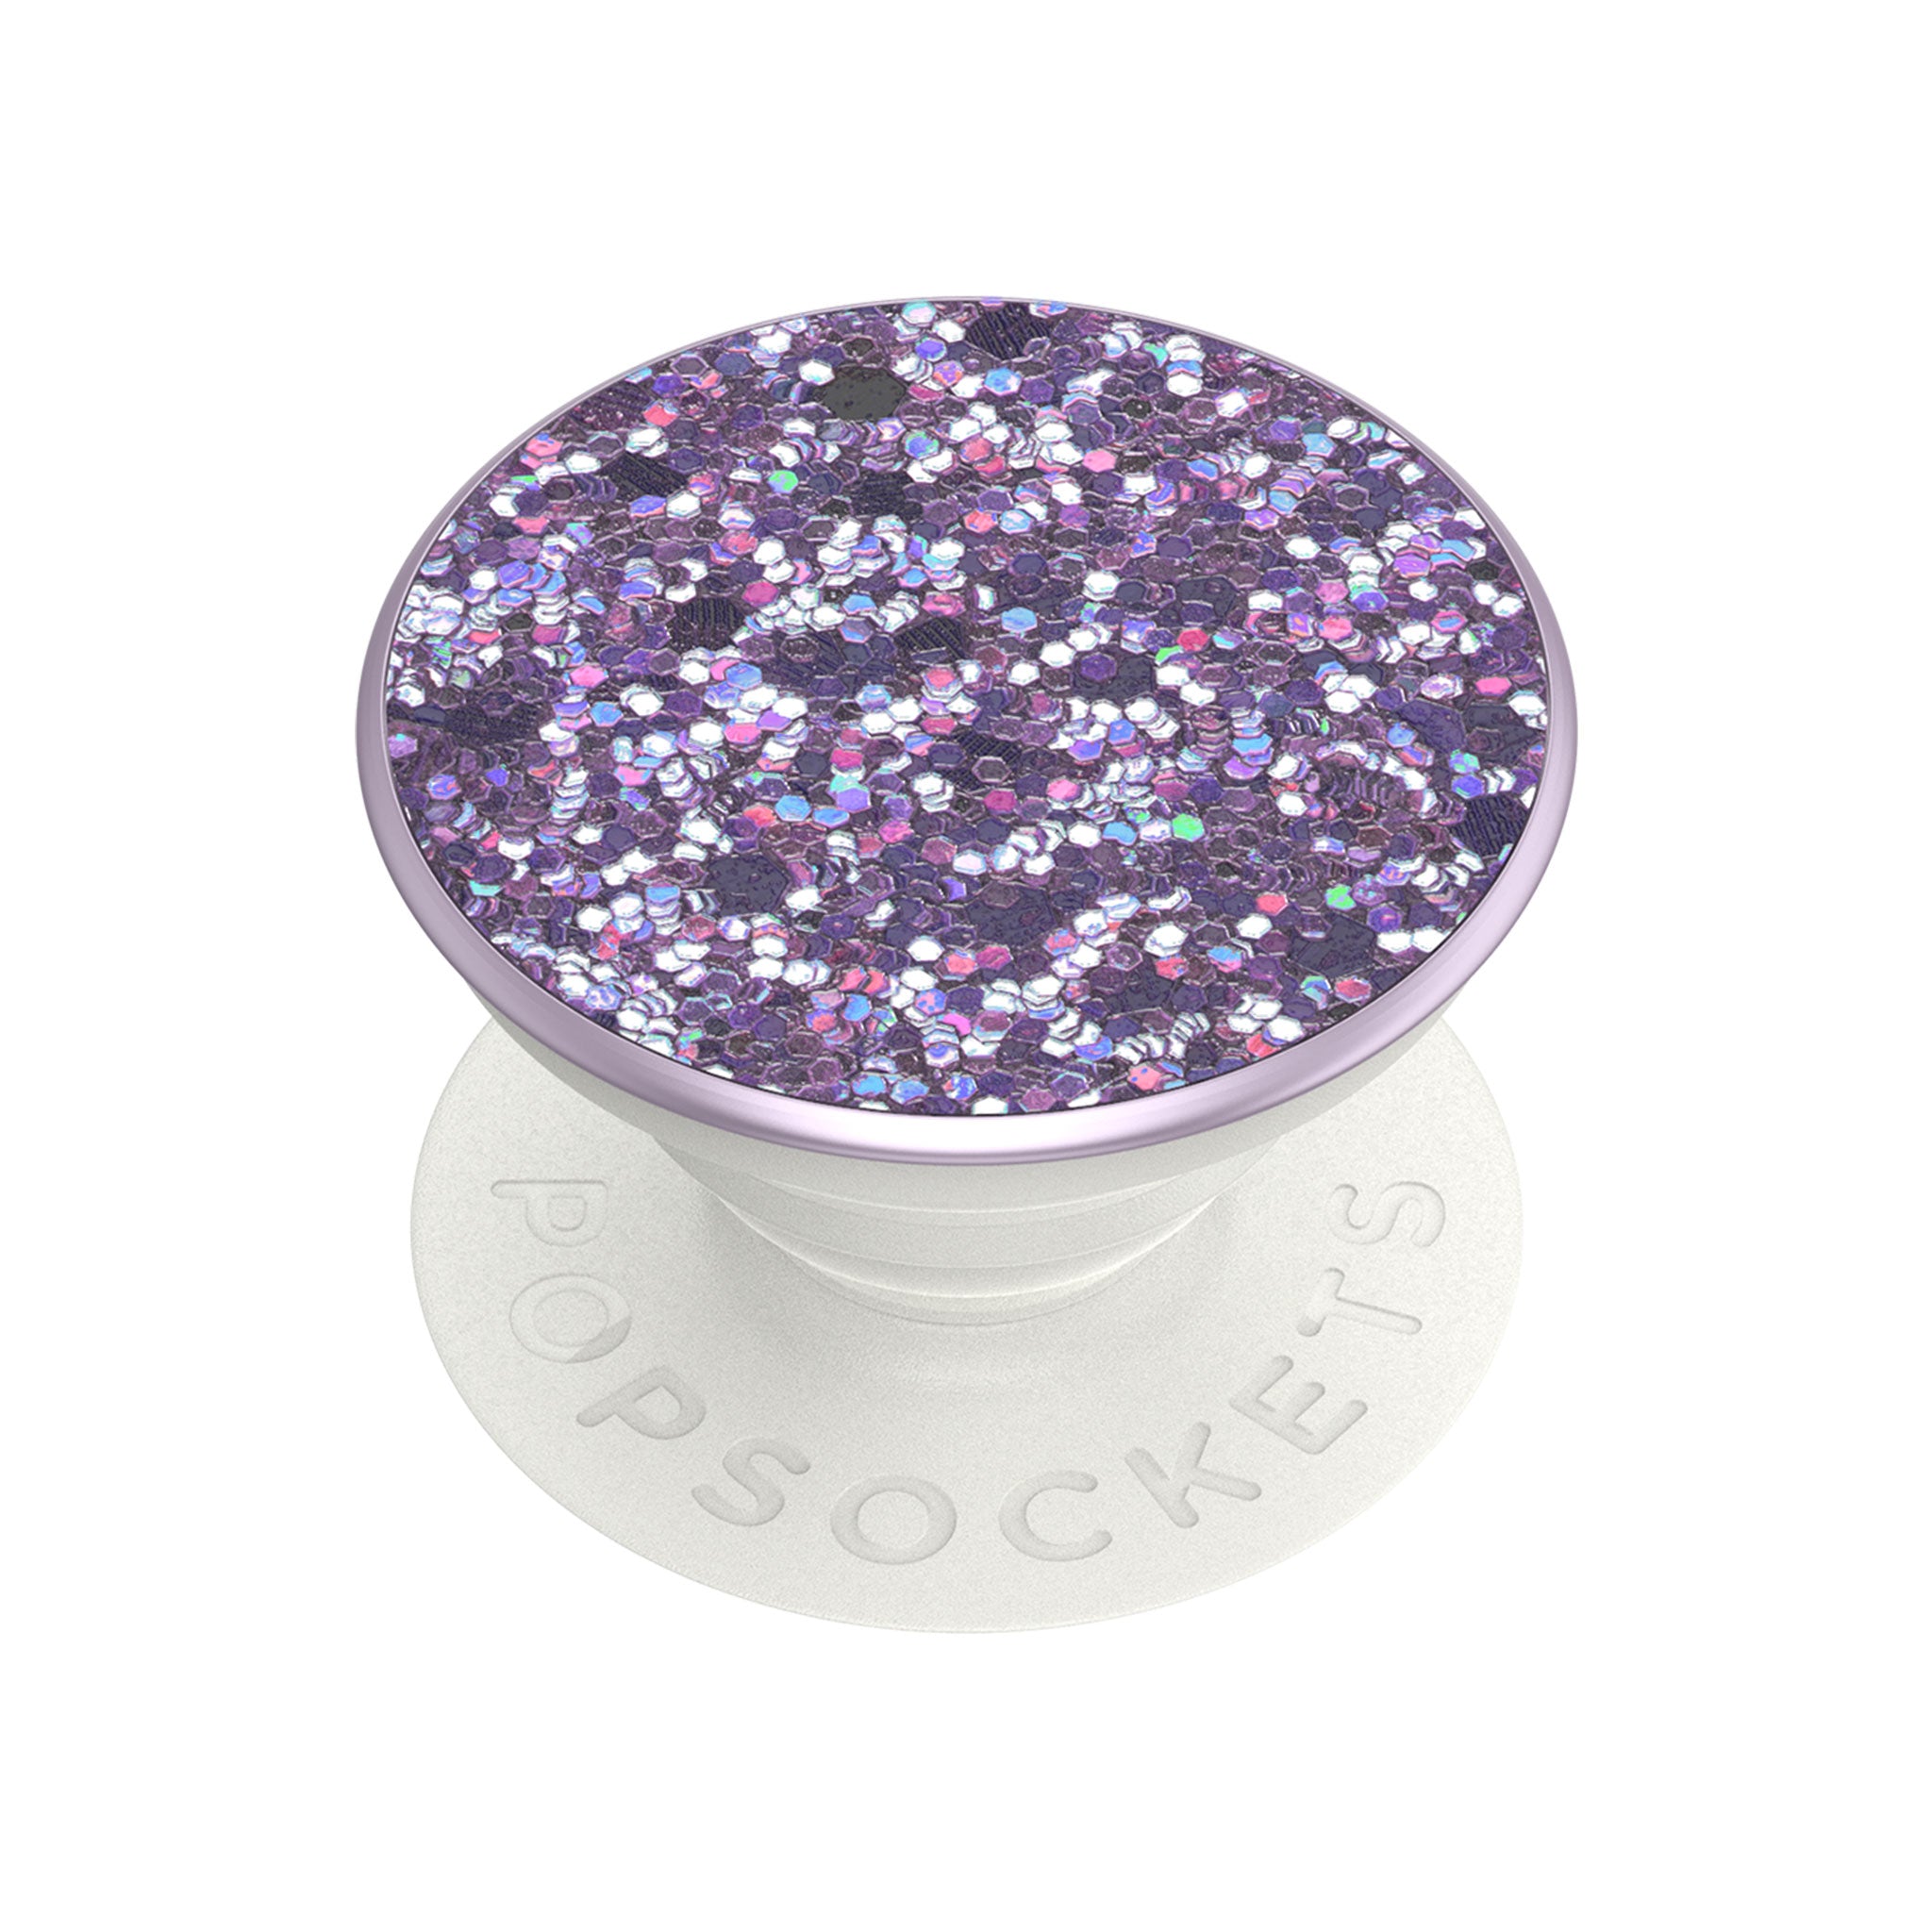 Popsockets - Popgrip Premium - Sparkle Lavender Purple